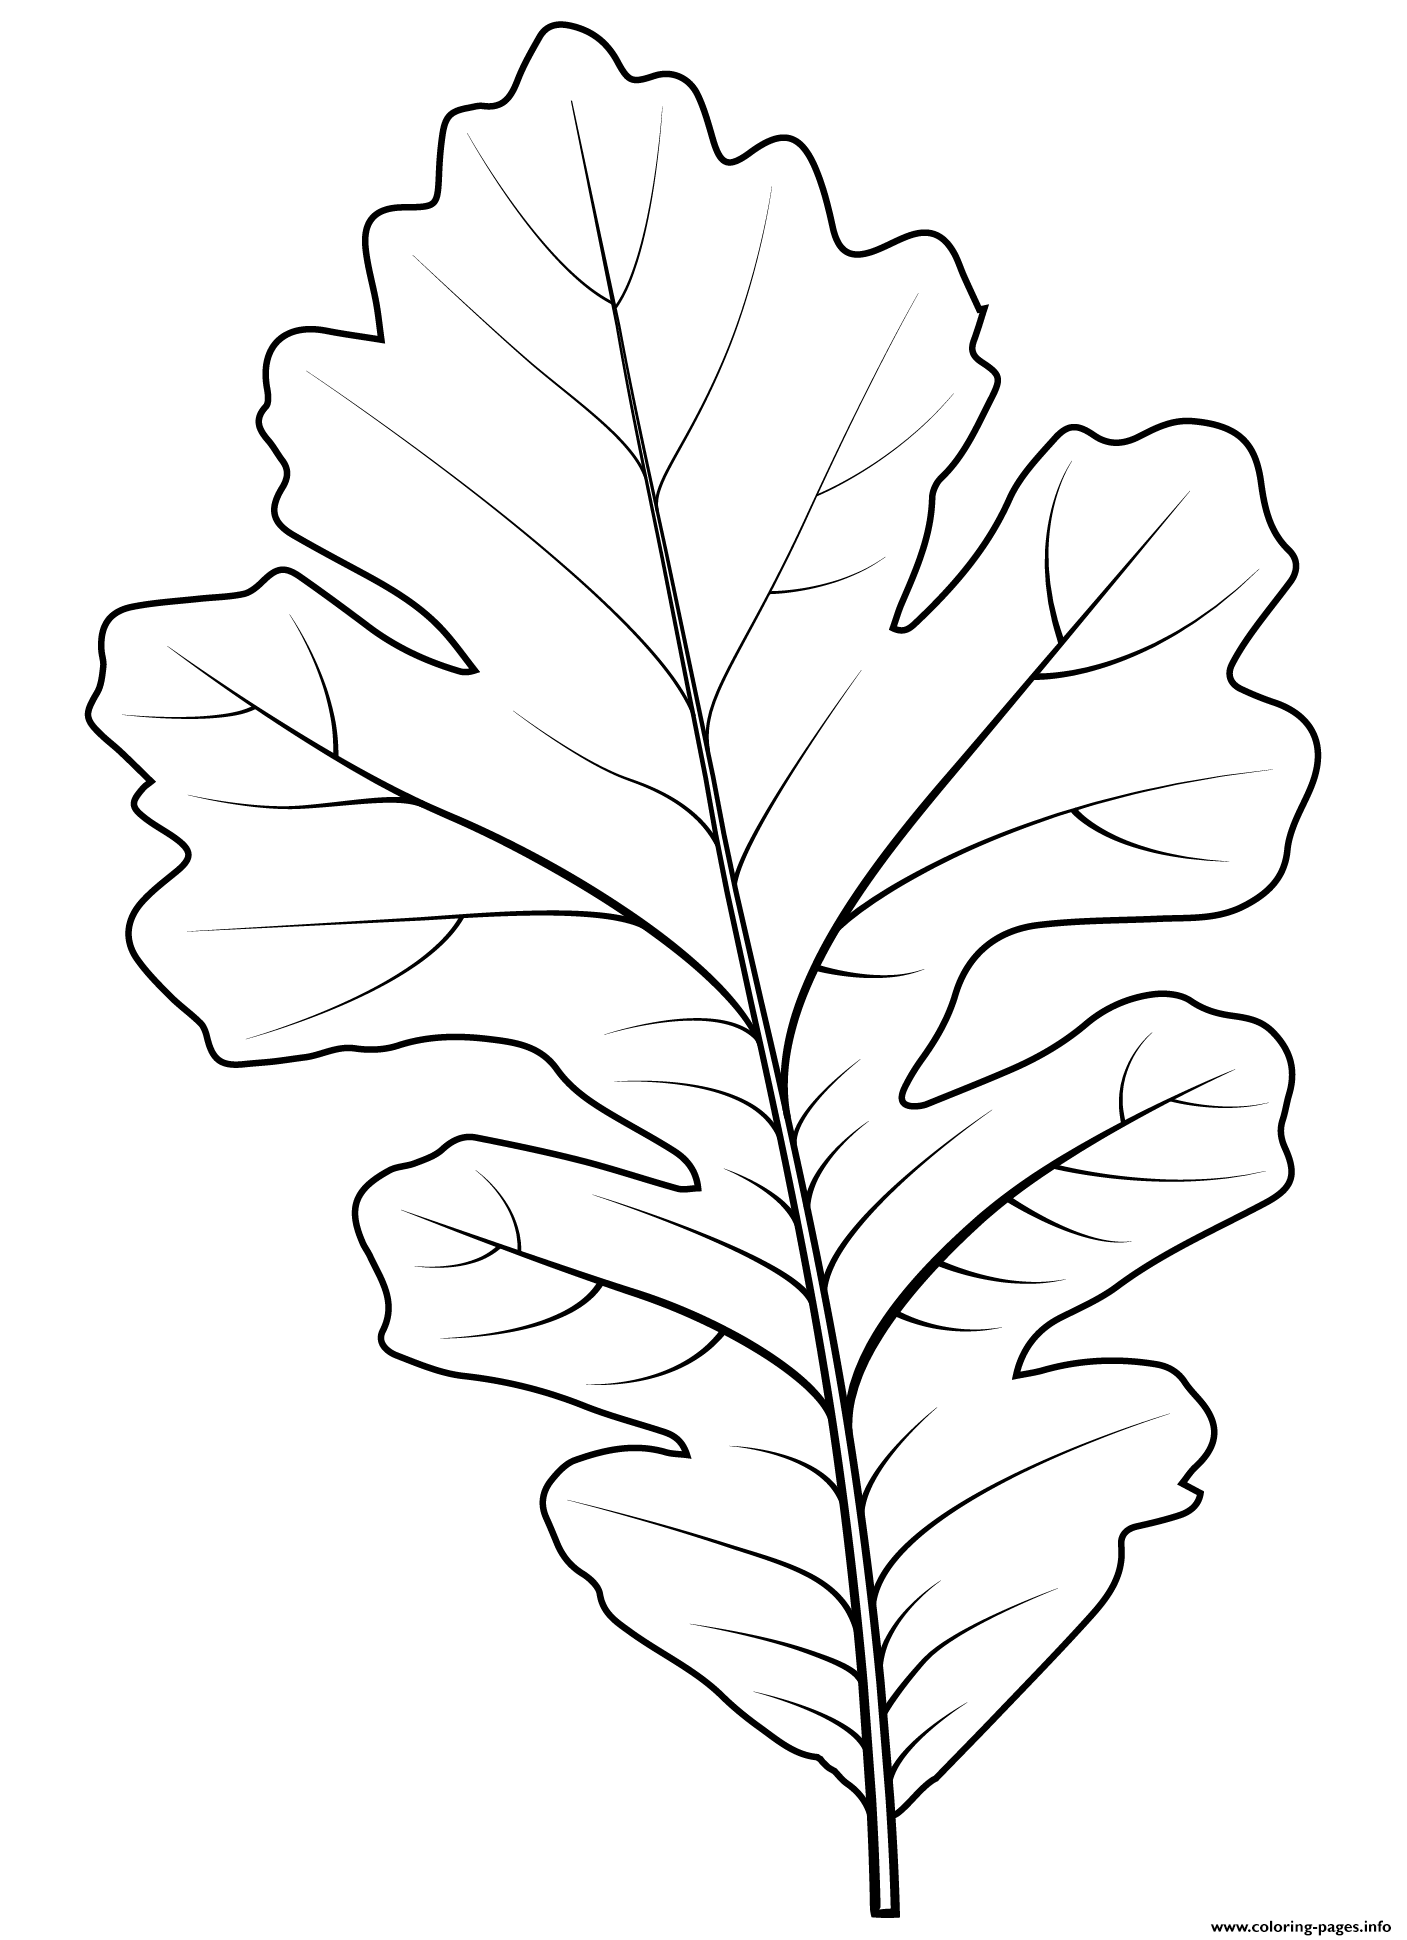 bur-oak-leaf-coloring-page-printable